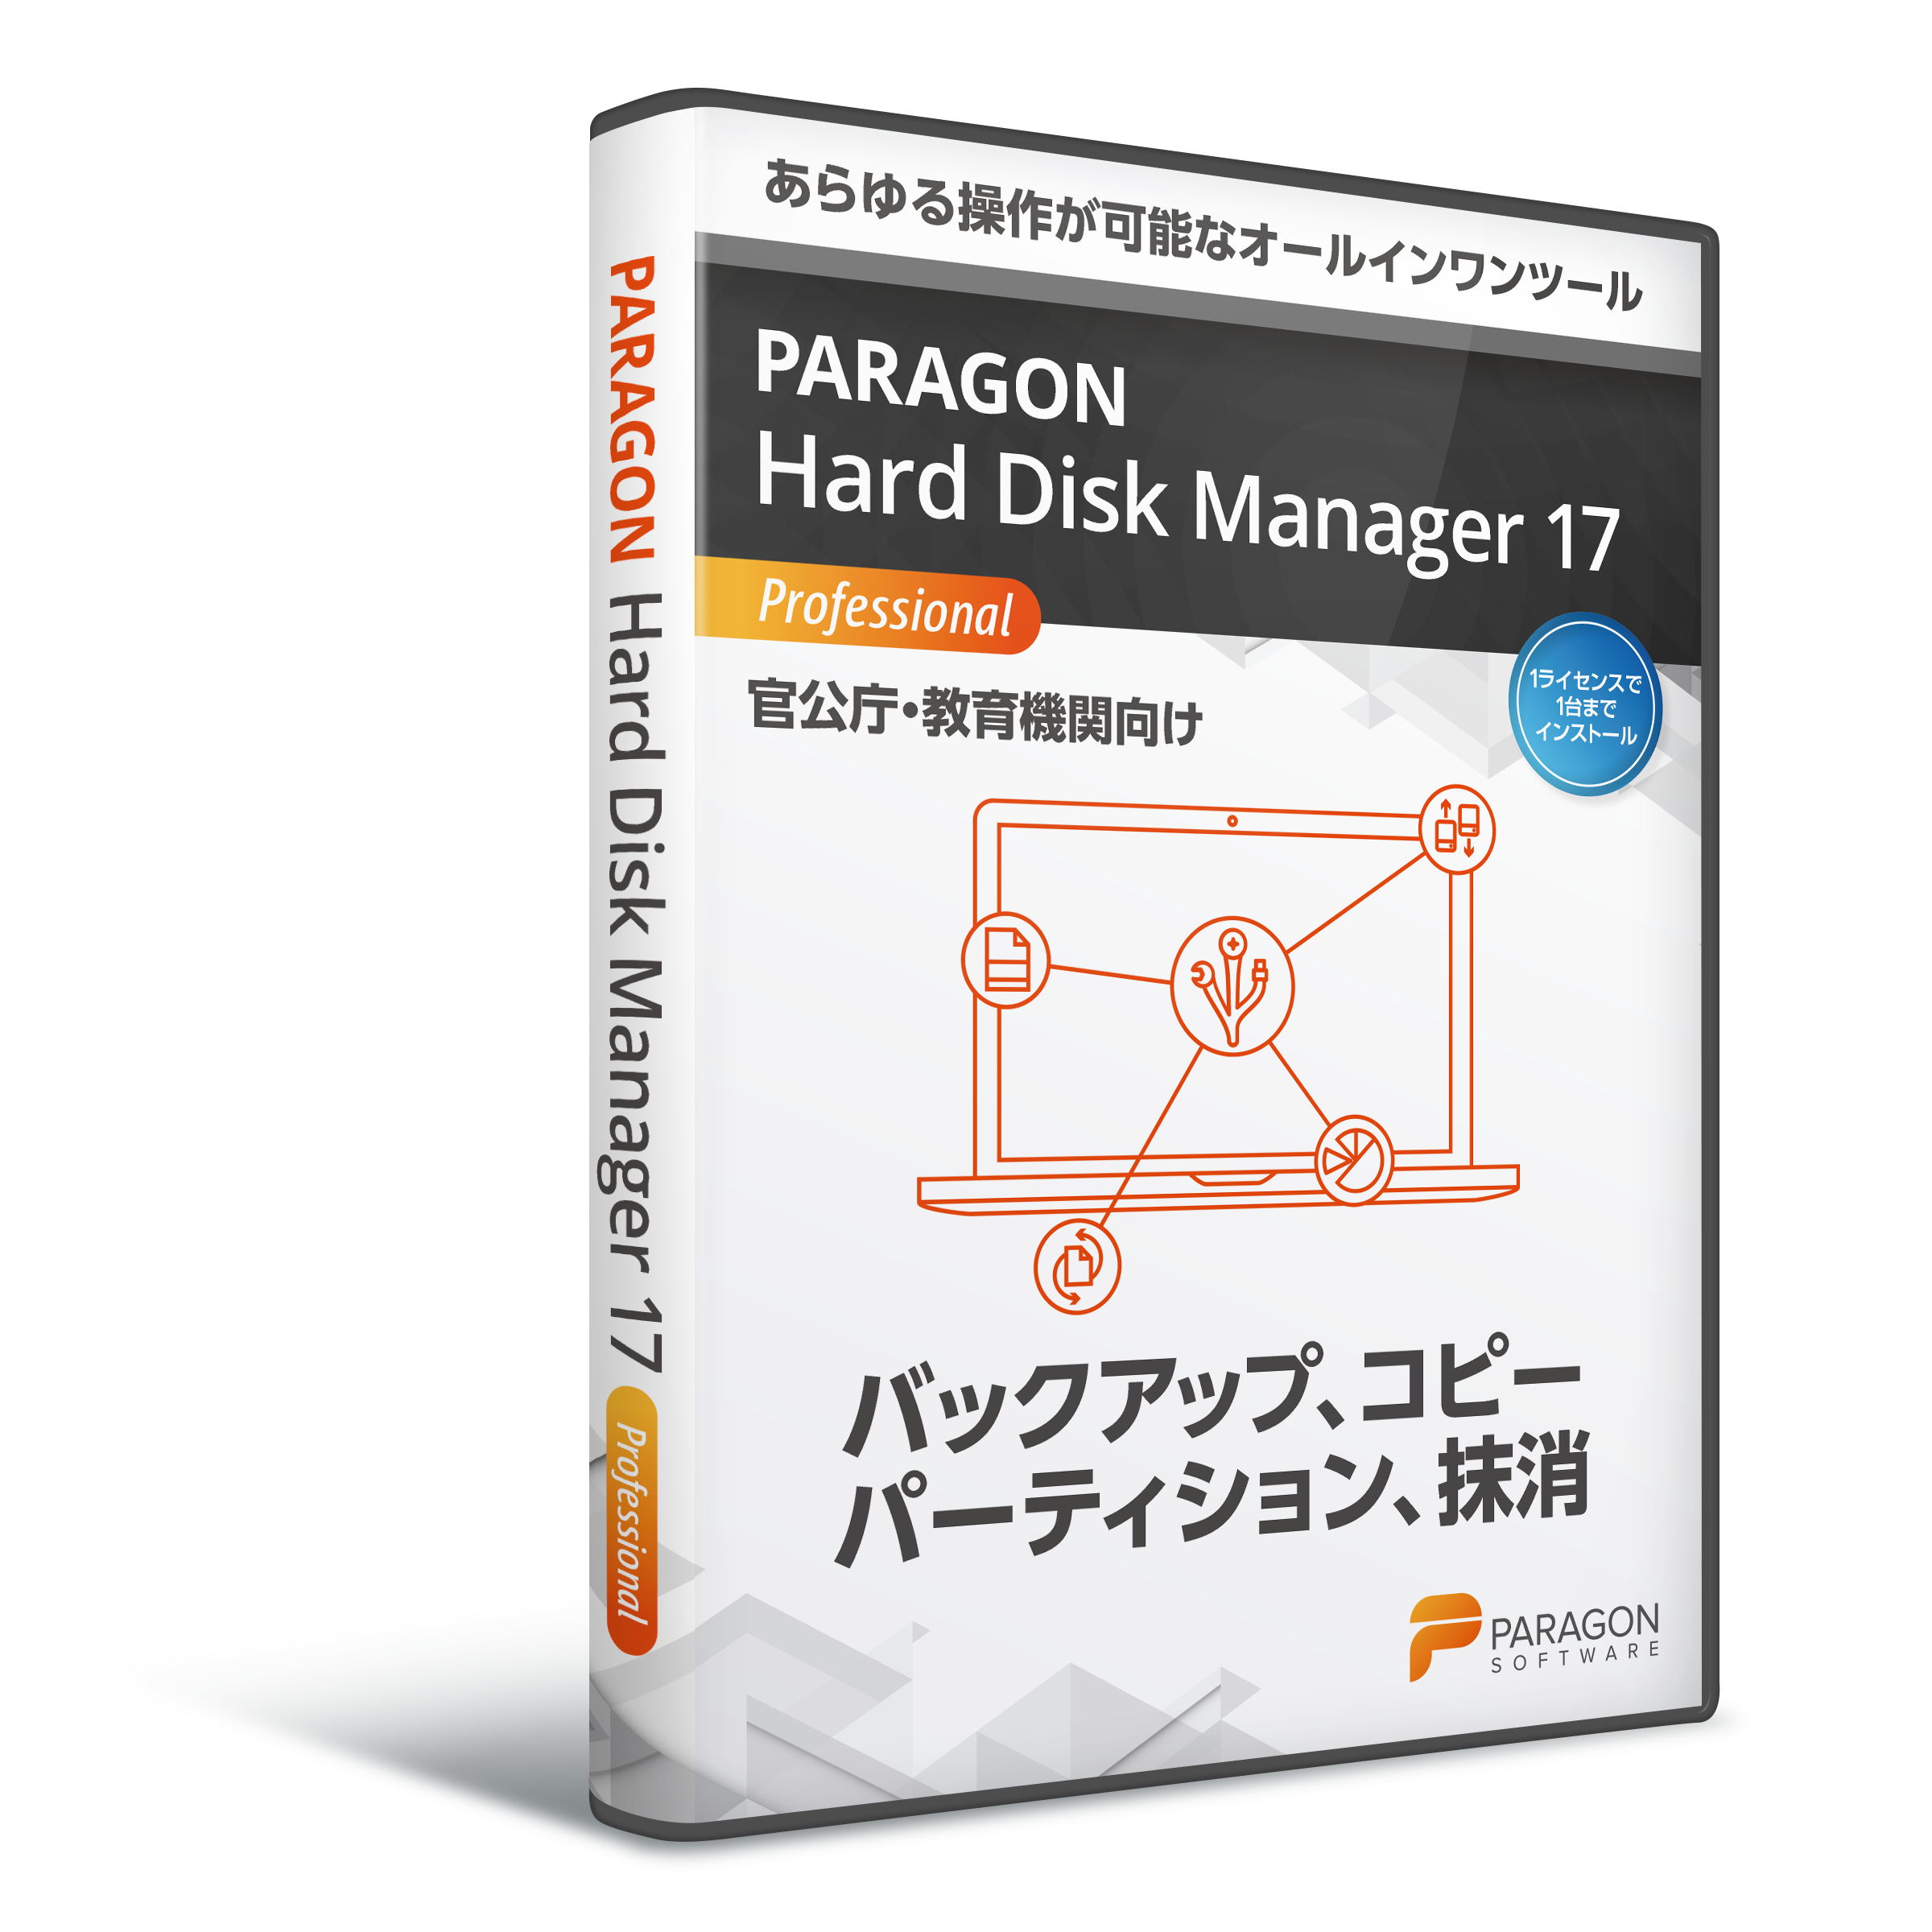 Paragon Hard Disk Manager 17 官公庁